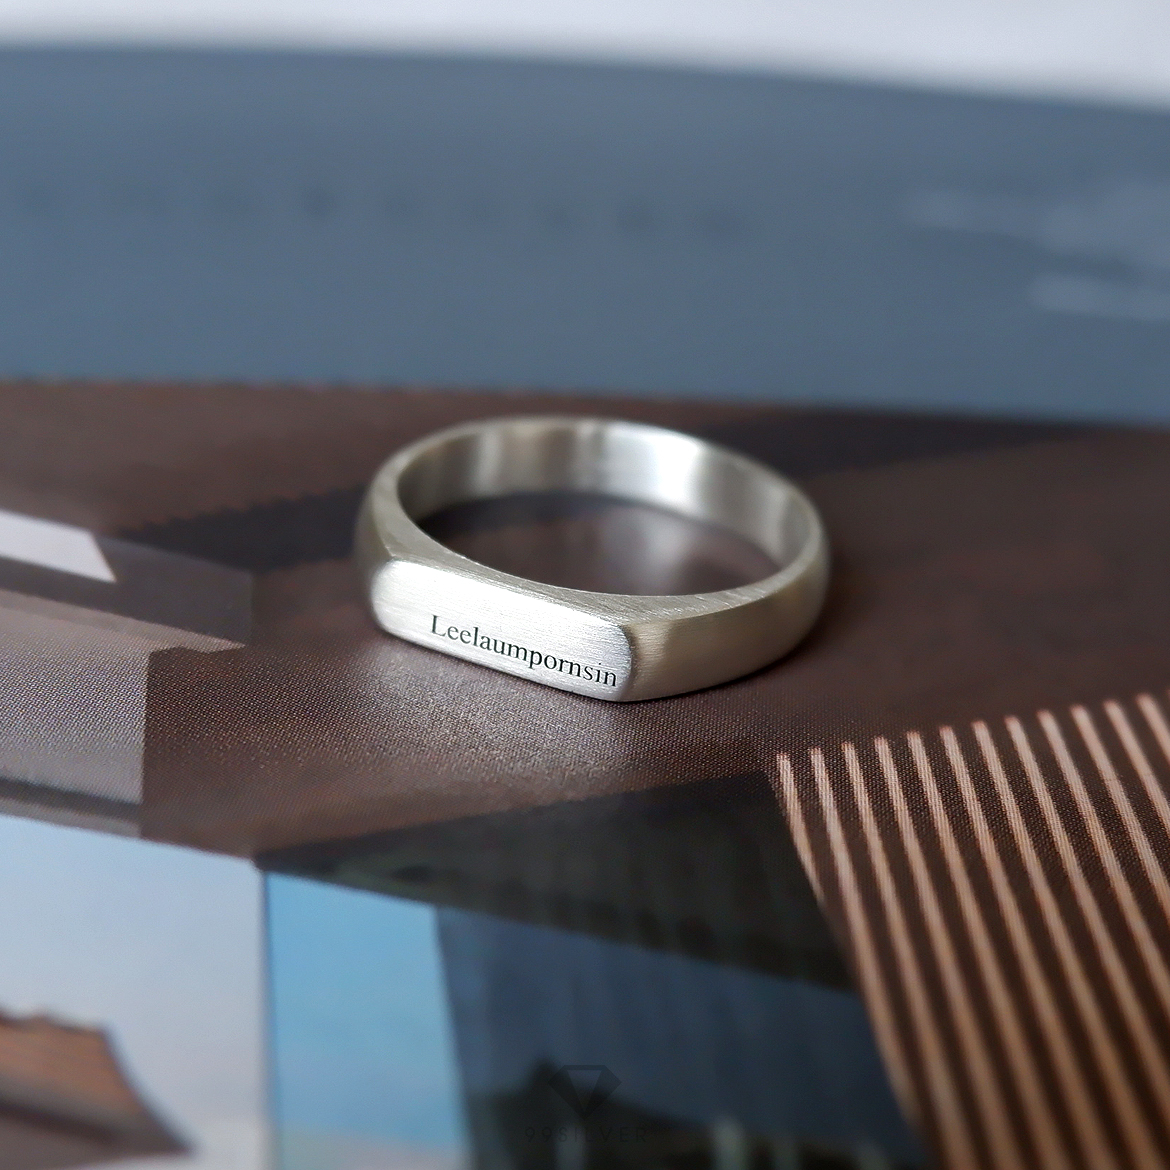 แหวนหน้าปาด เนื้อเงินแท้ ดีไซน์ minimal สามารถสลักอักษรได้ทุกตำแหน่ง